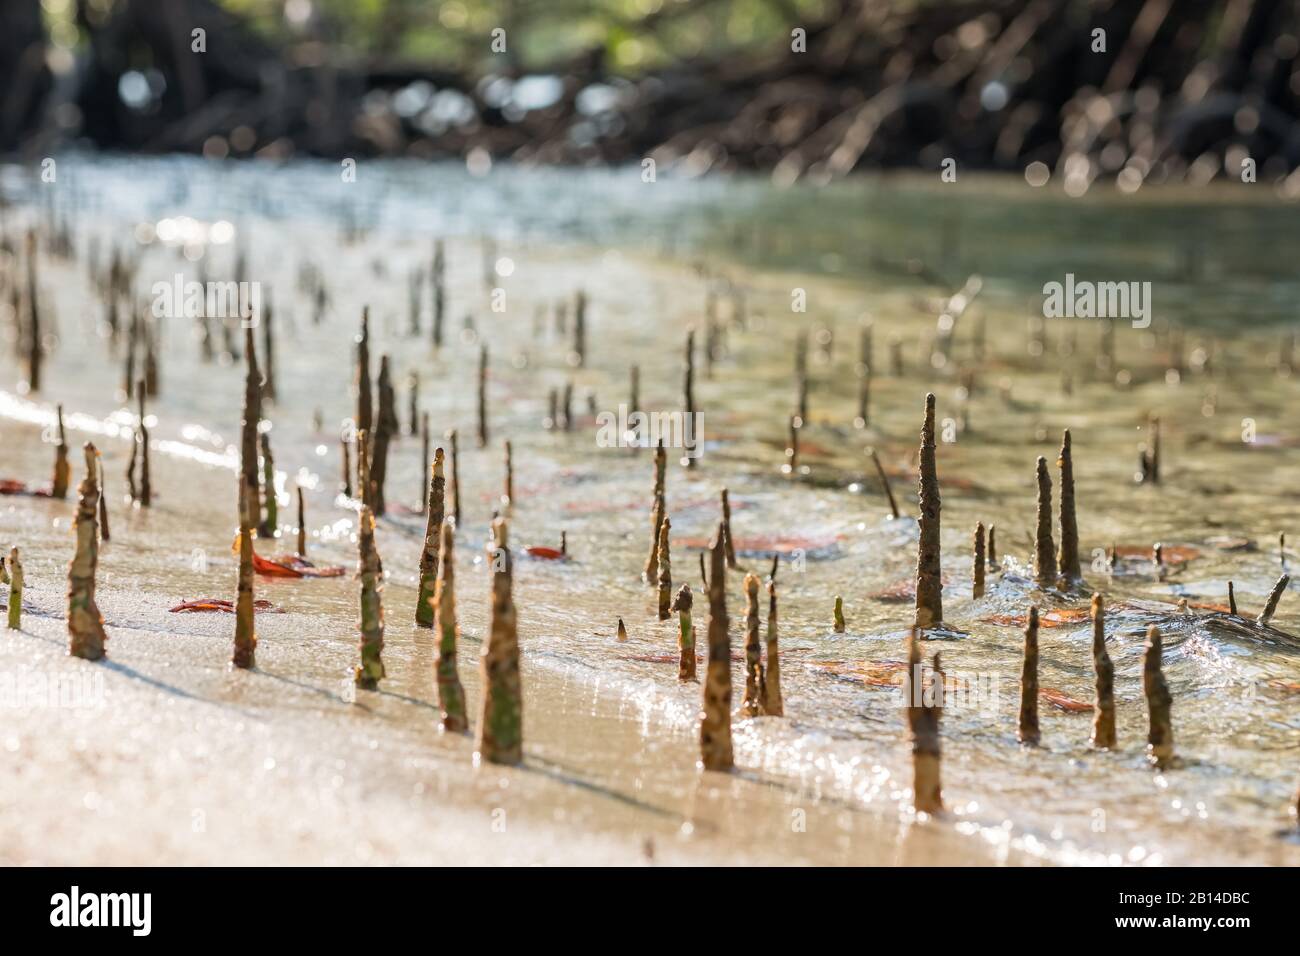 Junge Mangroven schießen in der Gezeitenzone des Meeres Stockfoto